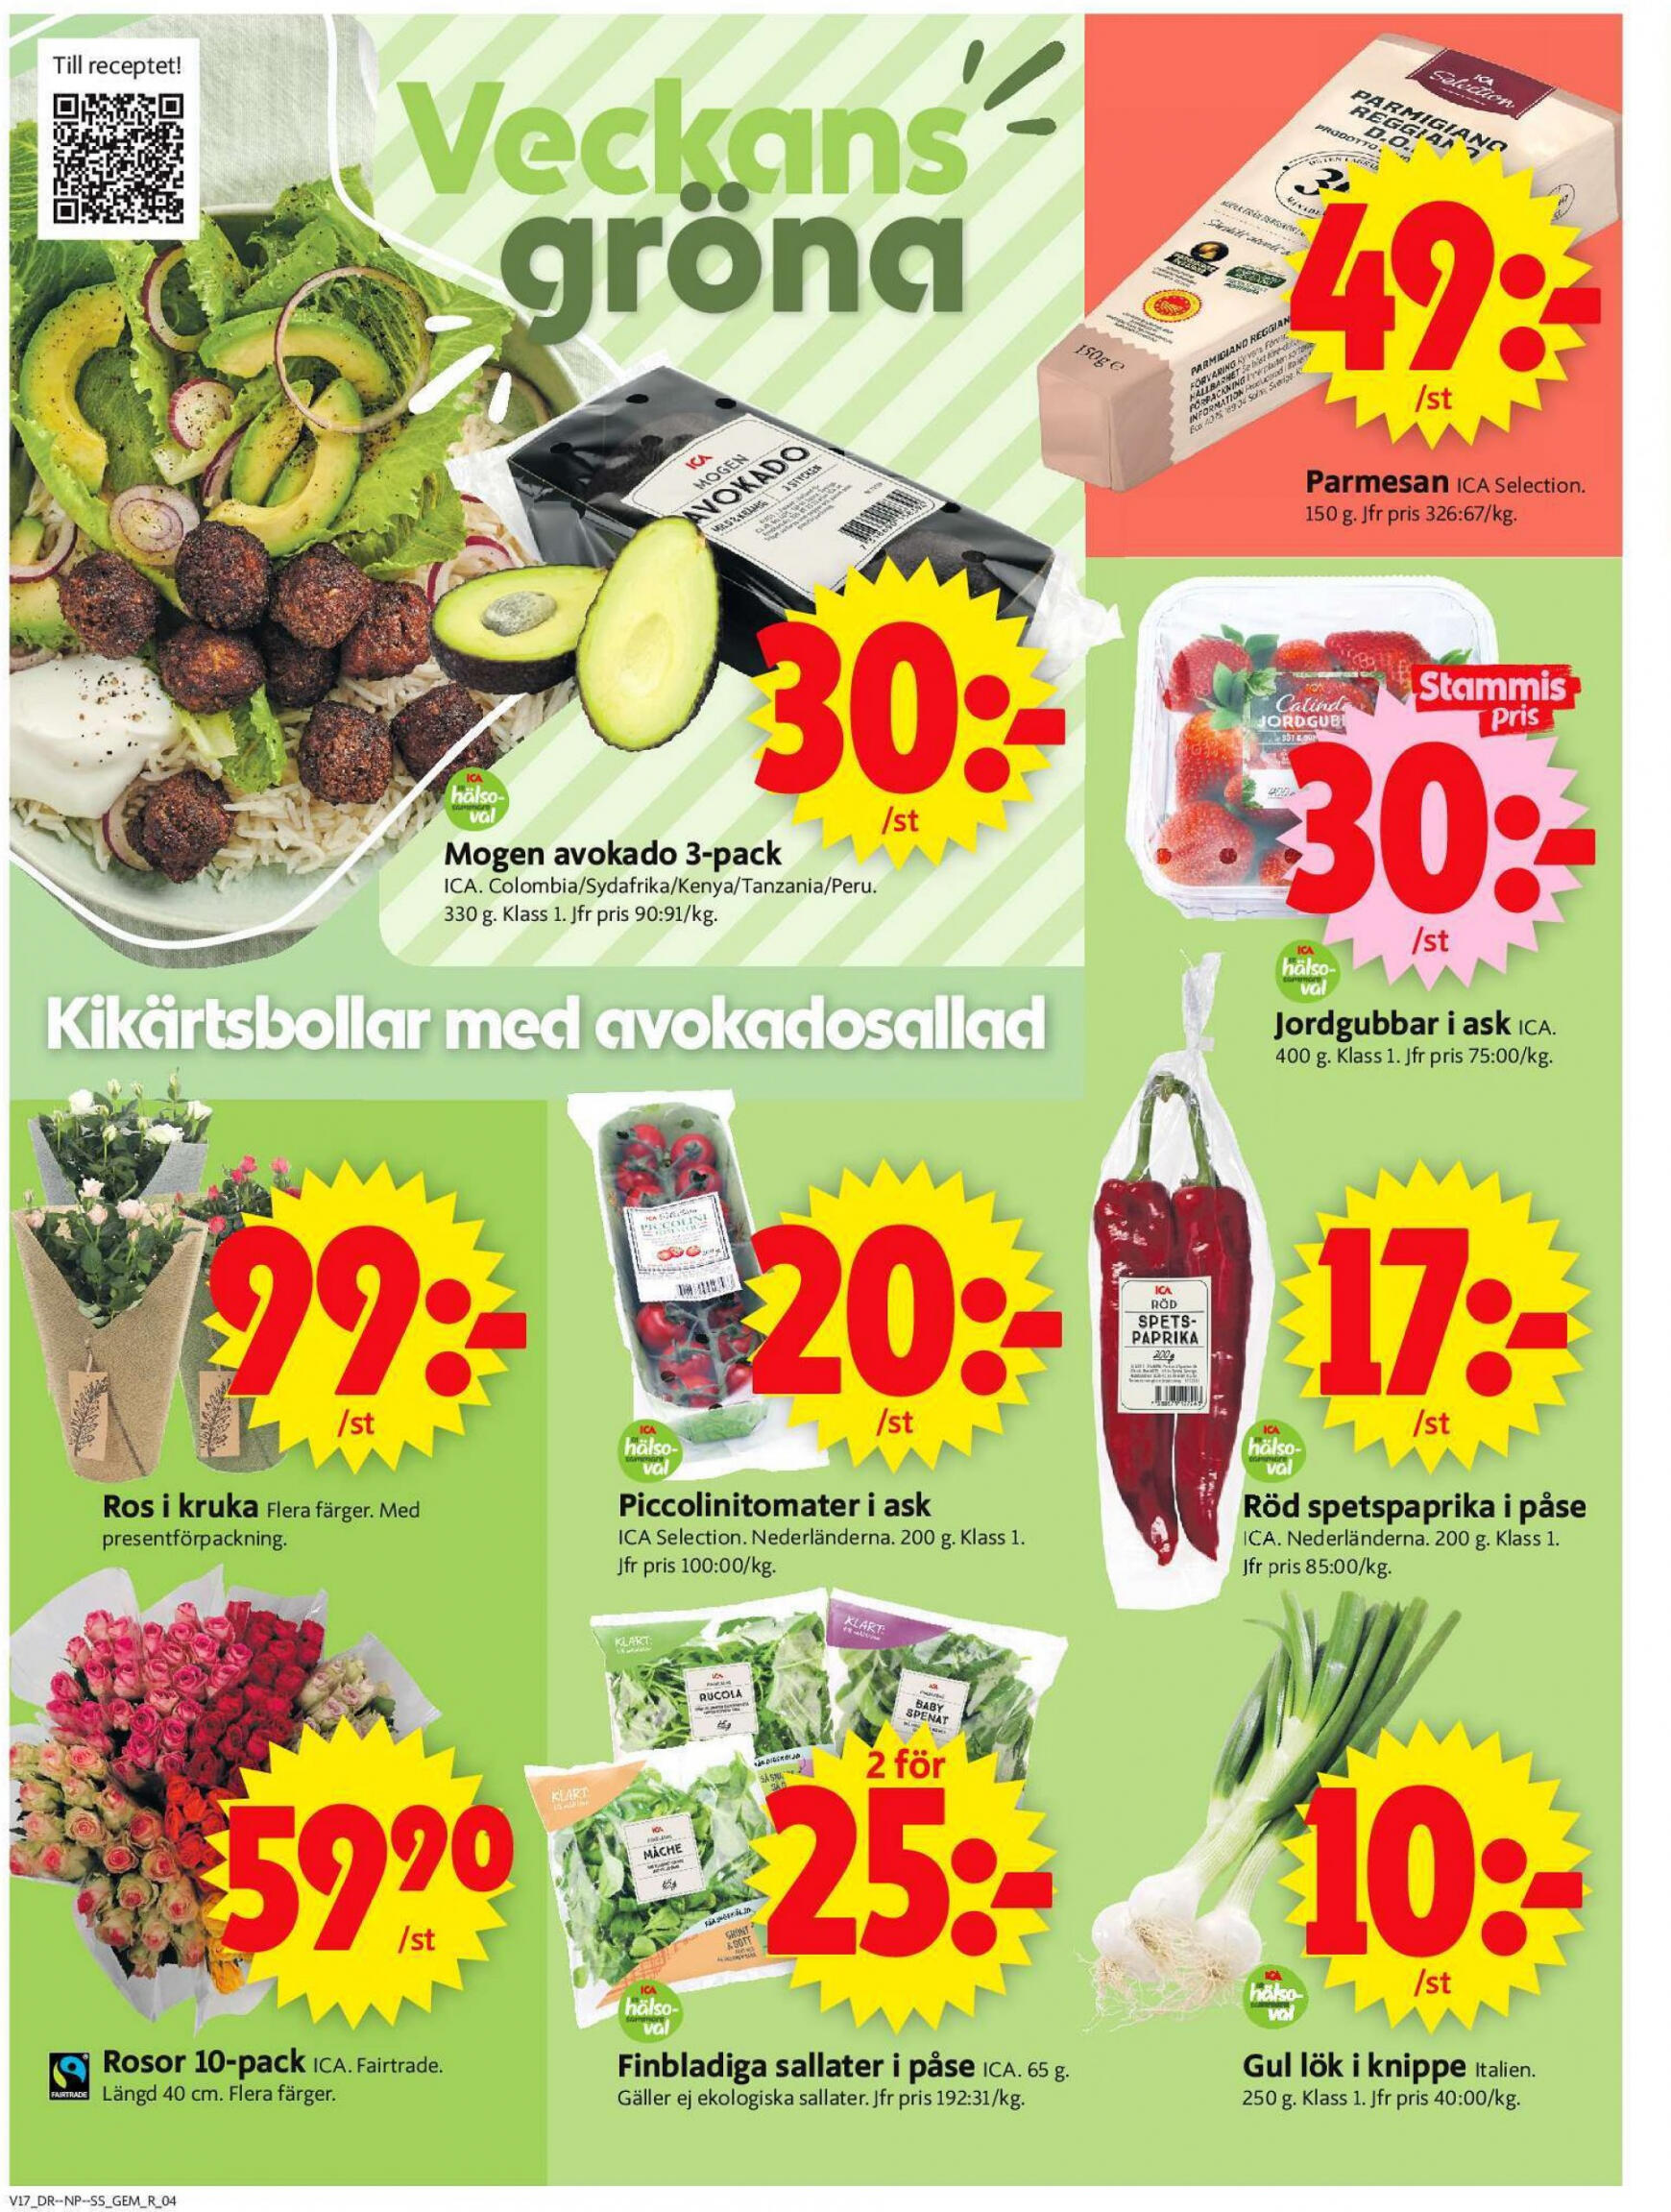 ica-supermarket - Flyer ICA Supermarket current 22.04. - 28.04. - page: 4